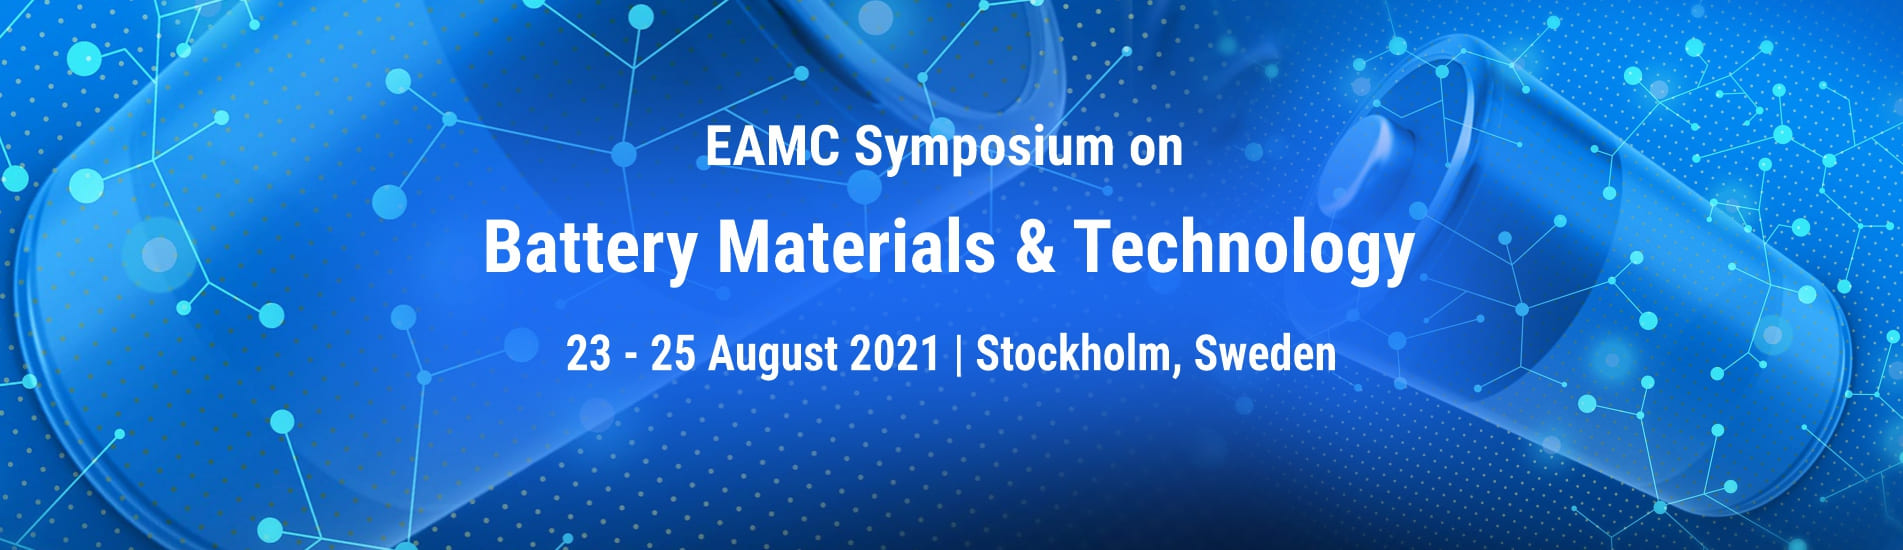 Battery Materials & Technology European Advanced Materials Congress